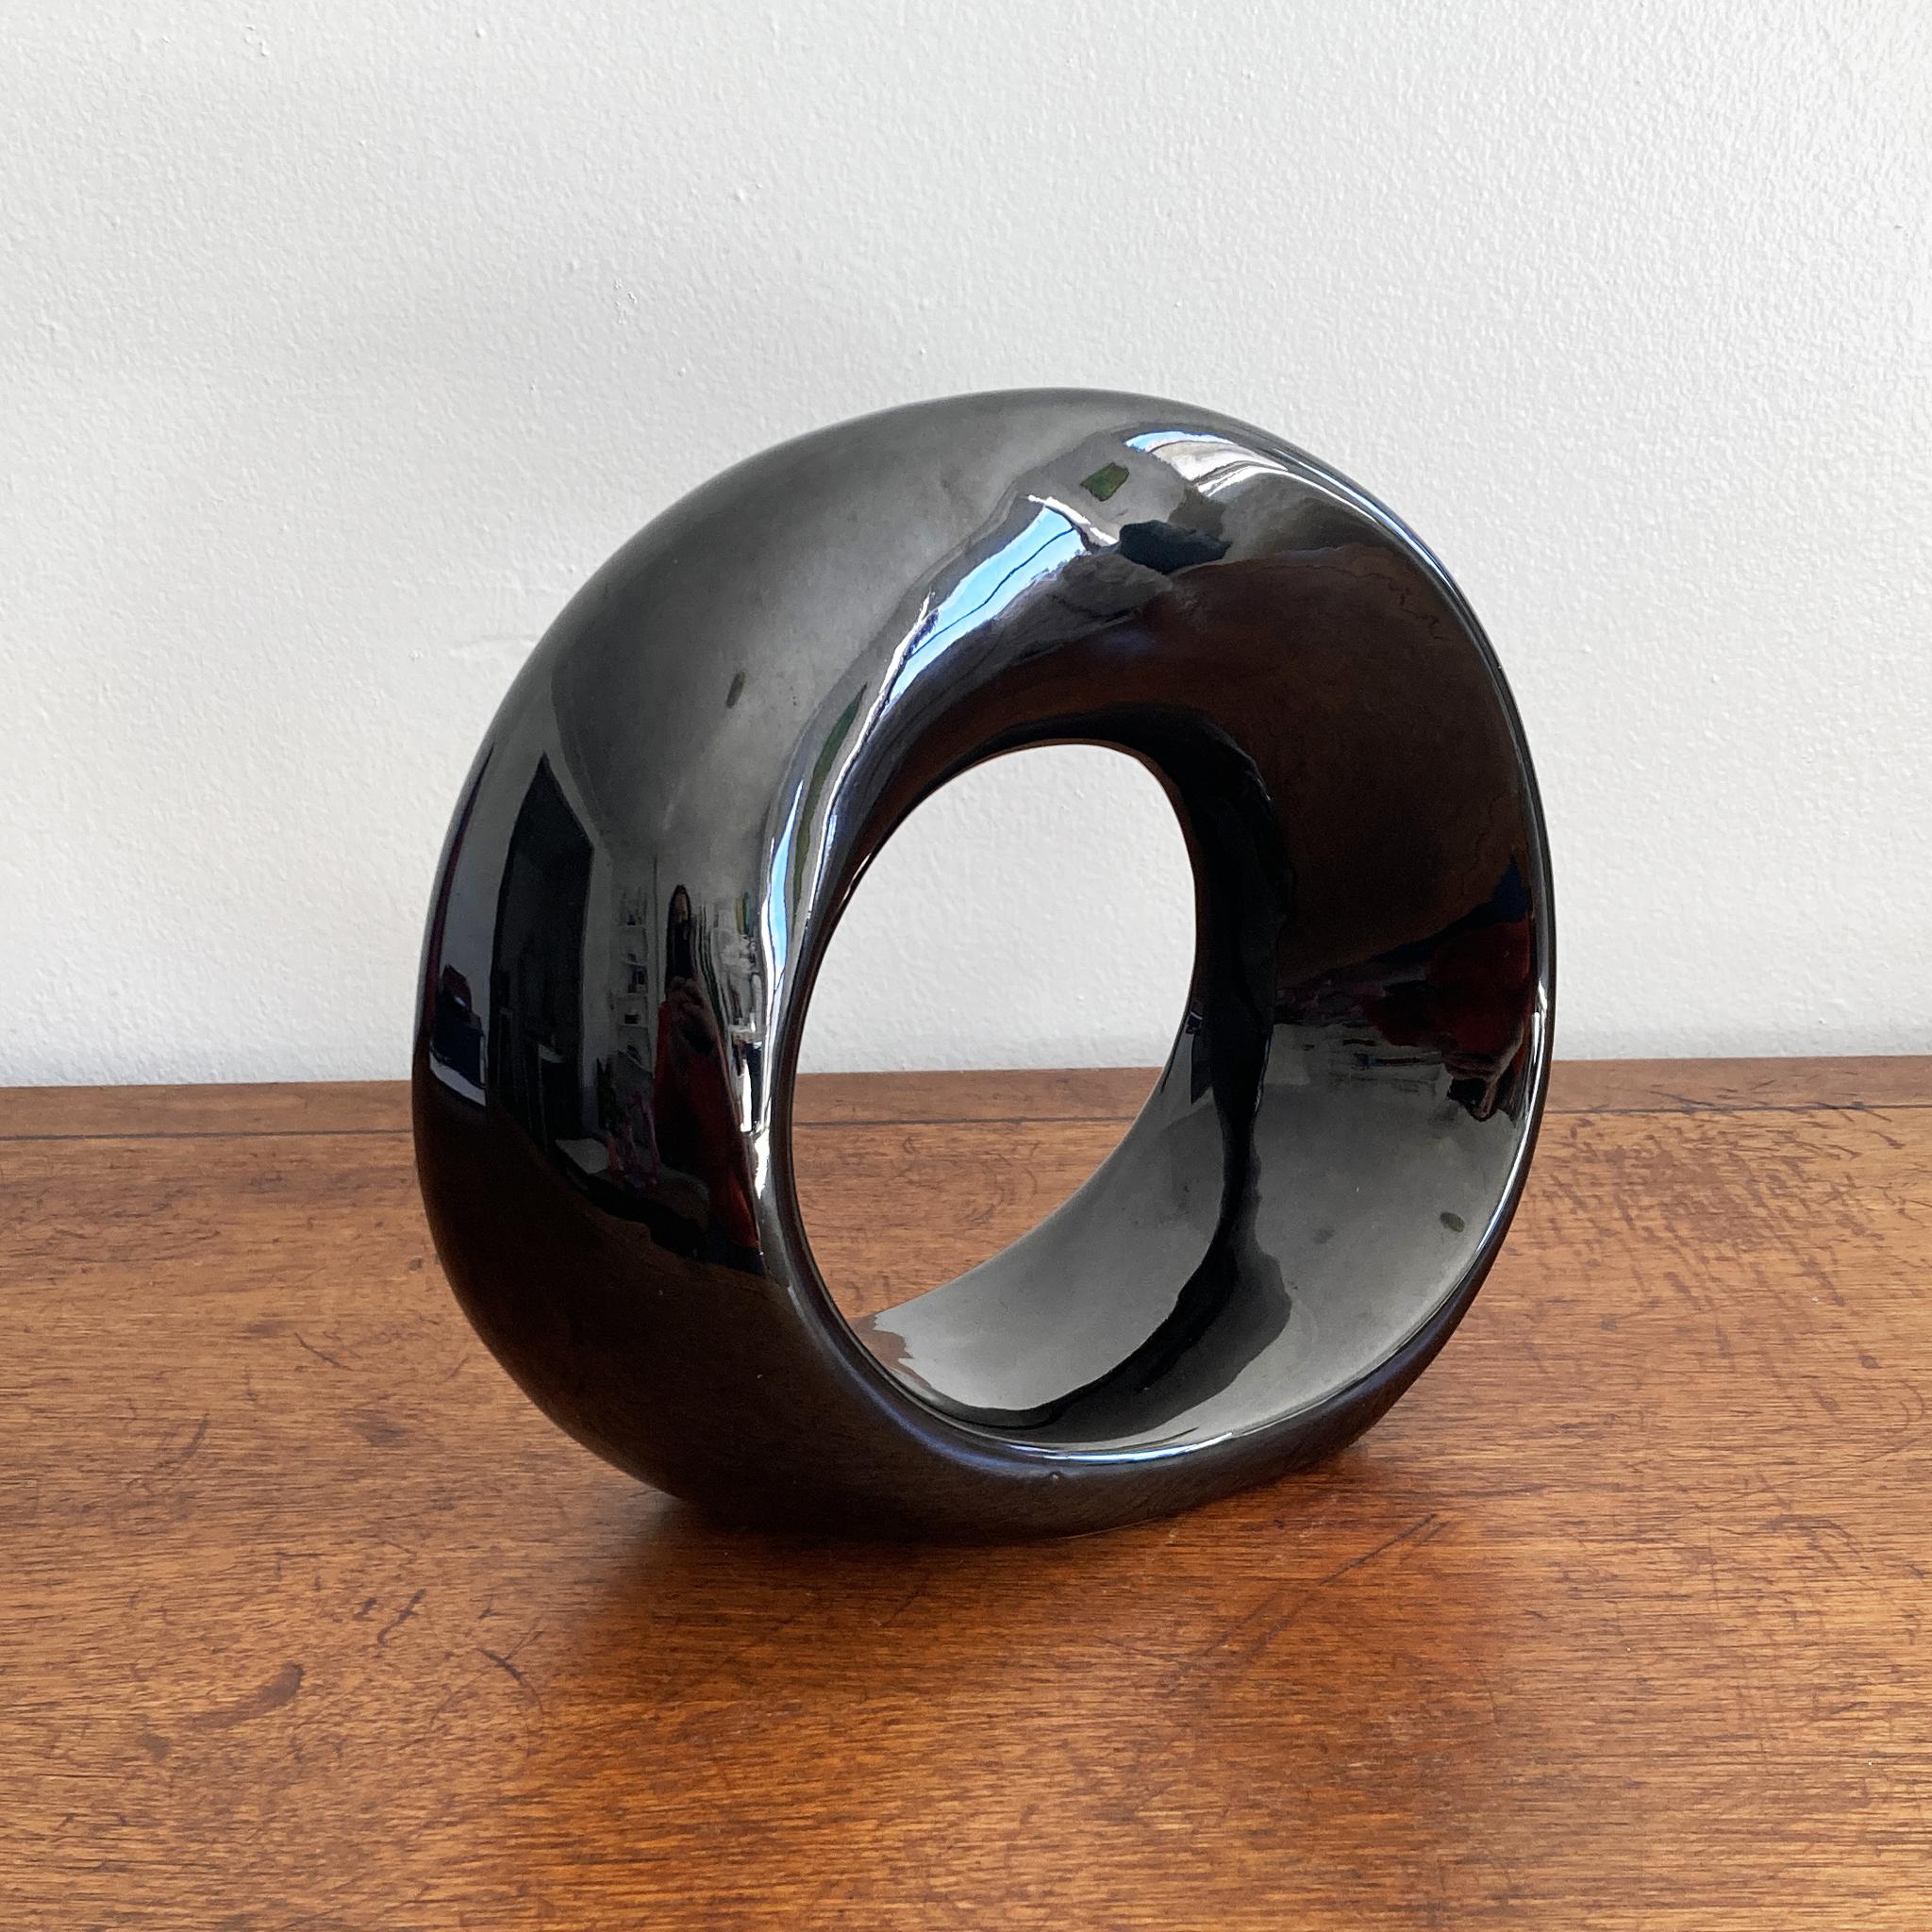 Eine atemberaubende seltene abstrakte Haeger Glanz schwarz Keramik verdreht Kugel Skulptur. Dieses Stück weckt das Interesse aus allen Blickwinkeln, die verdrehte Silhouette der Kugel fängt das Licht wunderschön ein. Wunderbar für sich allein oder